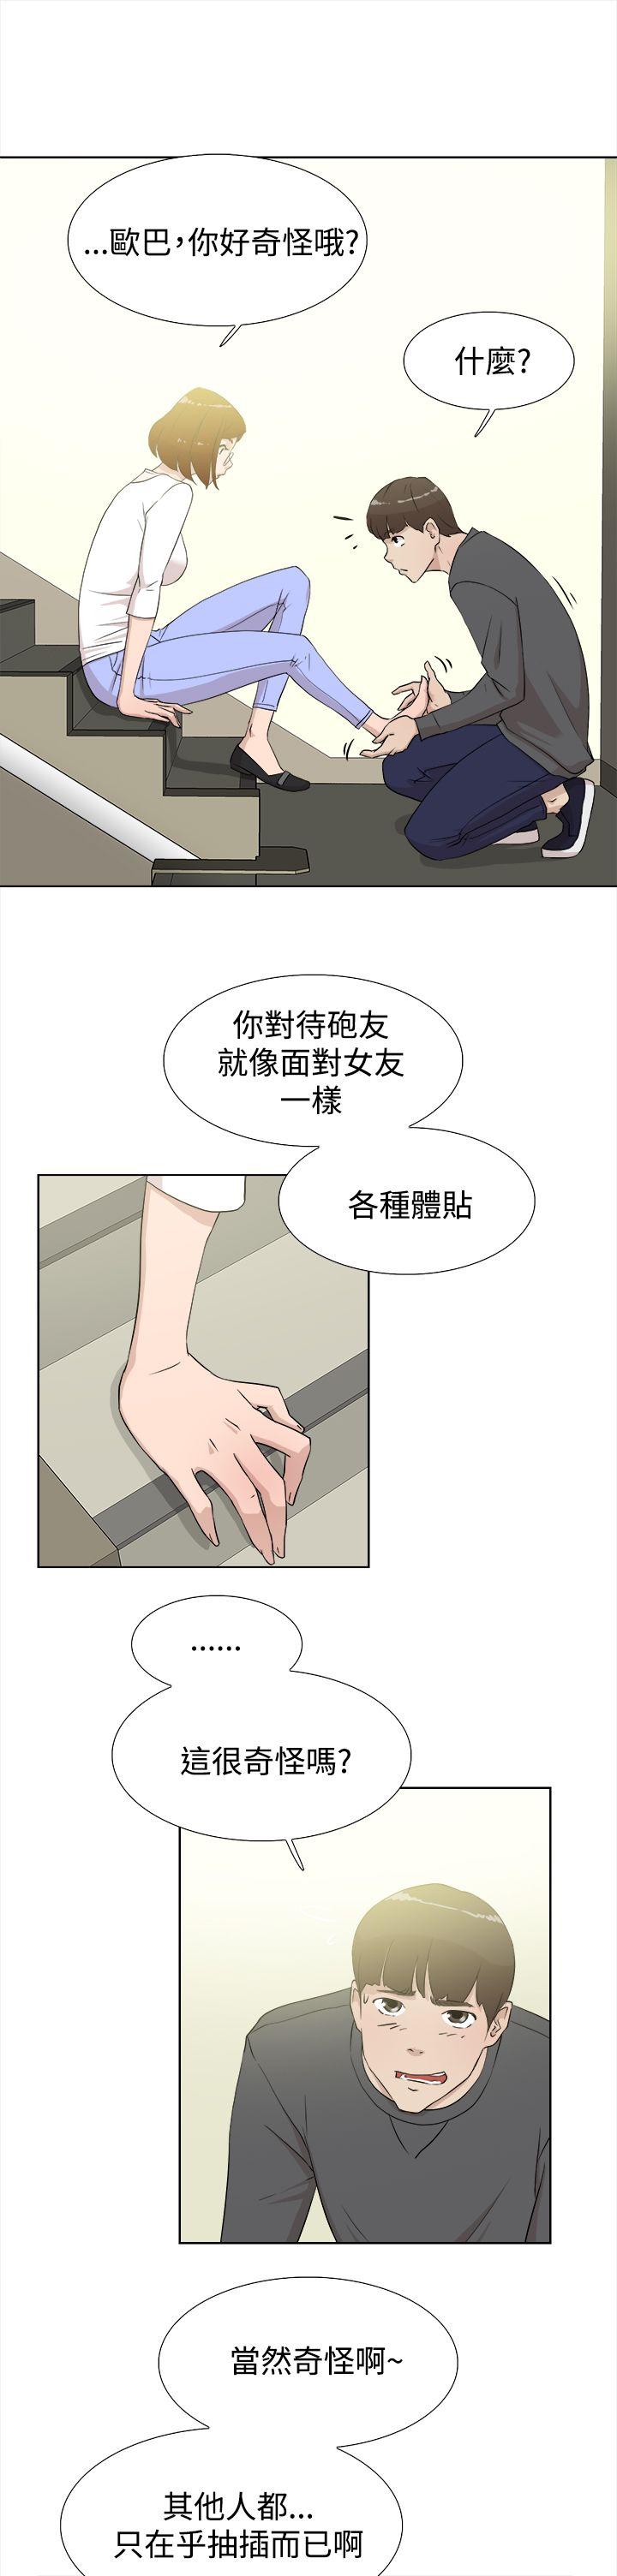 韩国污漫画 她的高跟鞋(無刪減) 第11话 7